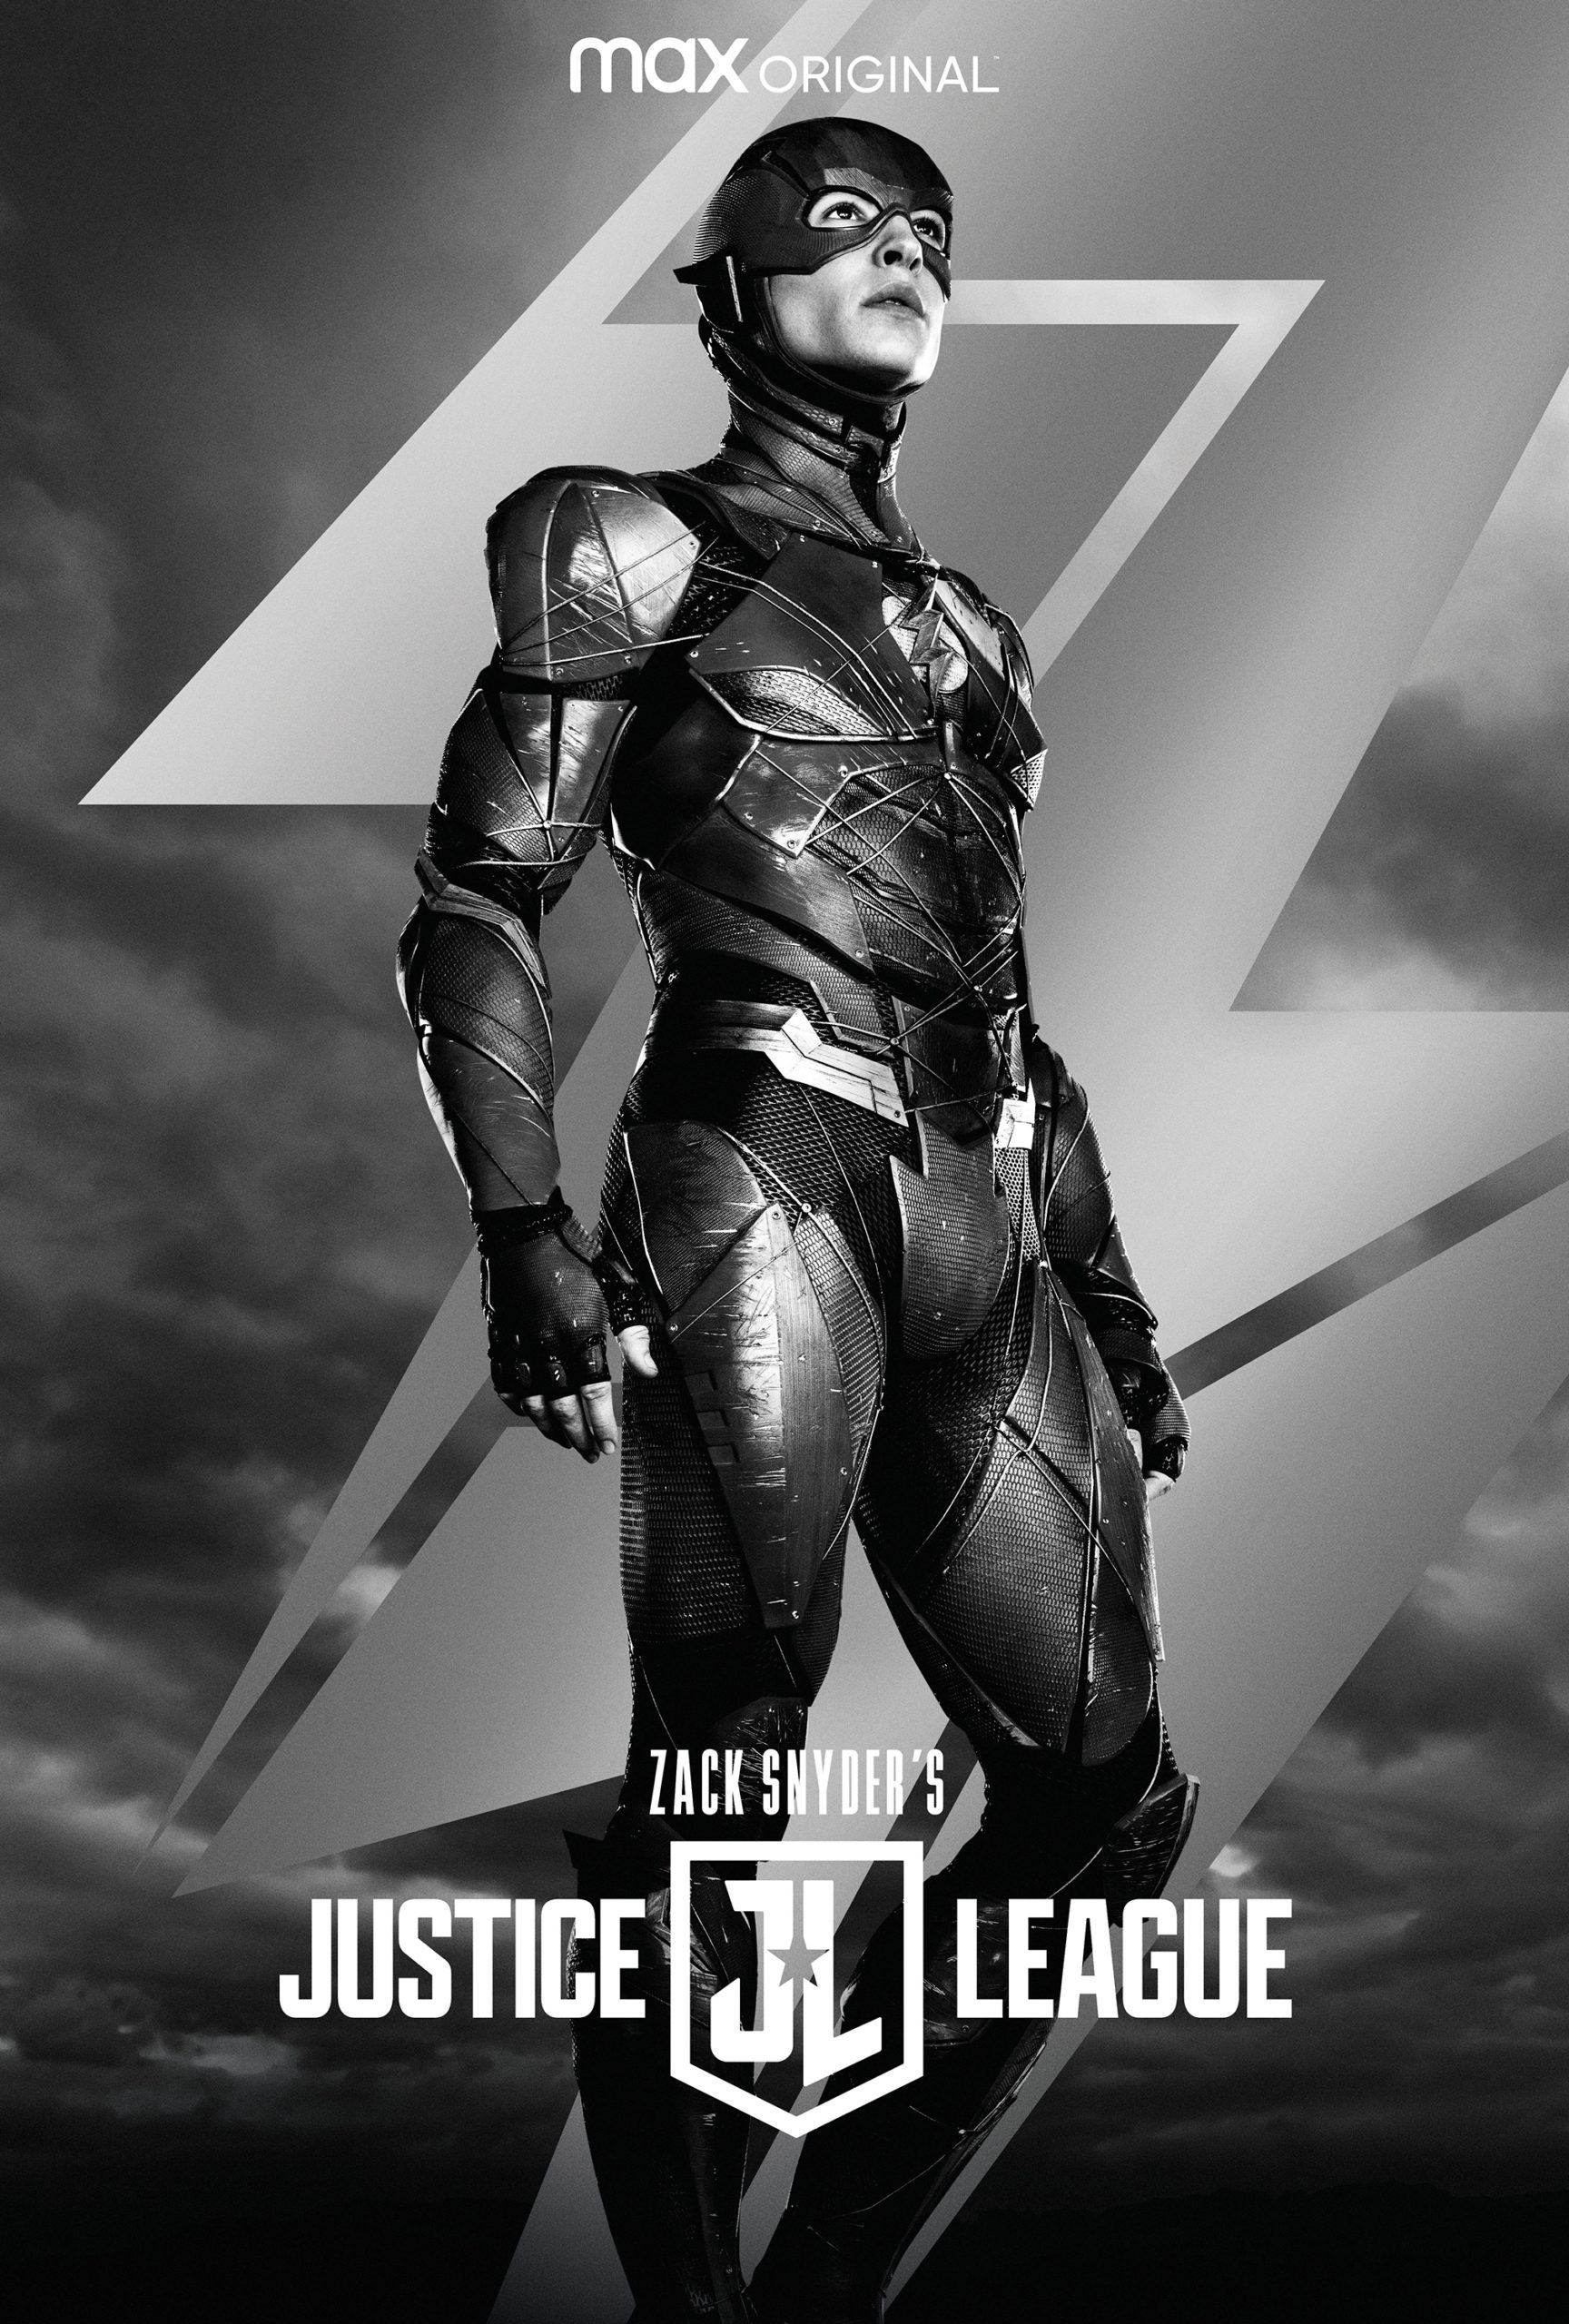 Póster de Zack Snyder's Justice League protagonizado por Flash